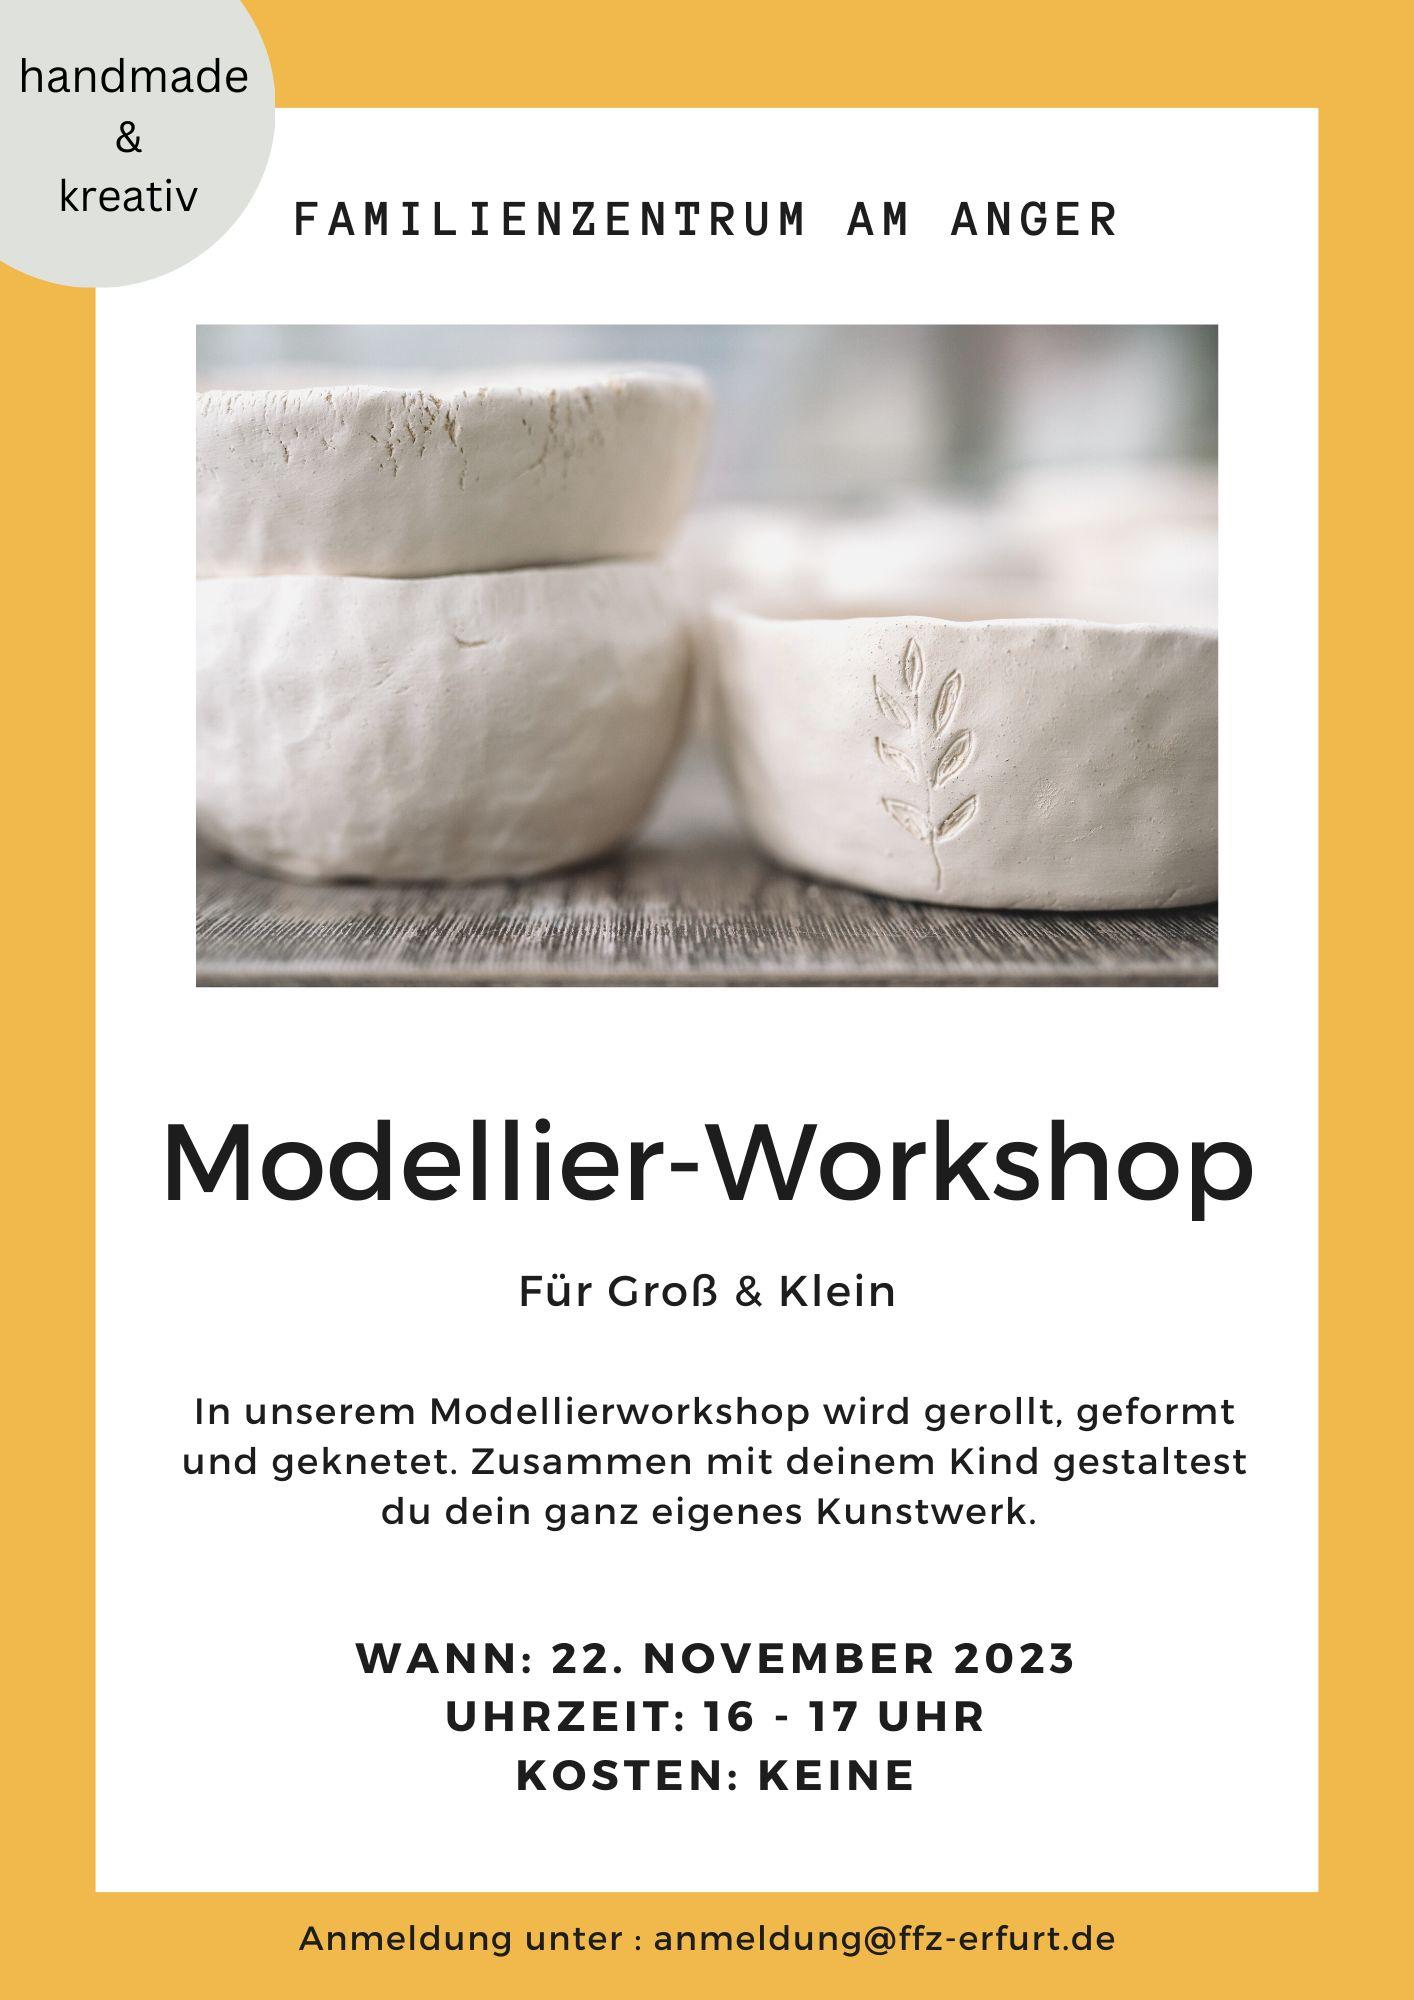 Modellier-Workshop 22.11.2023